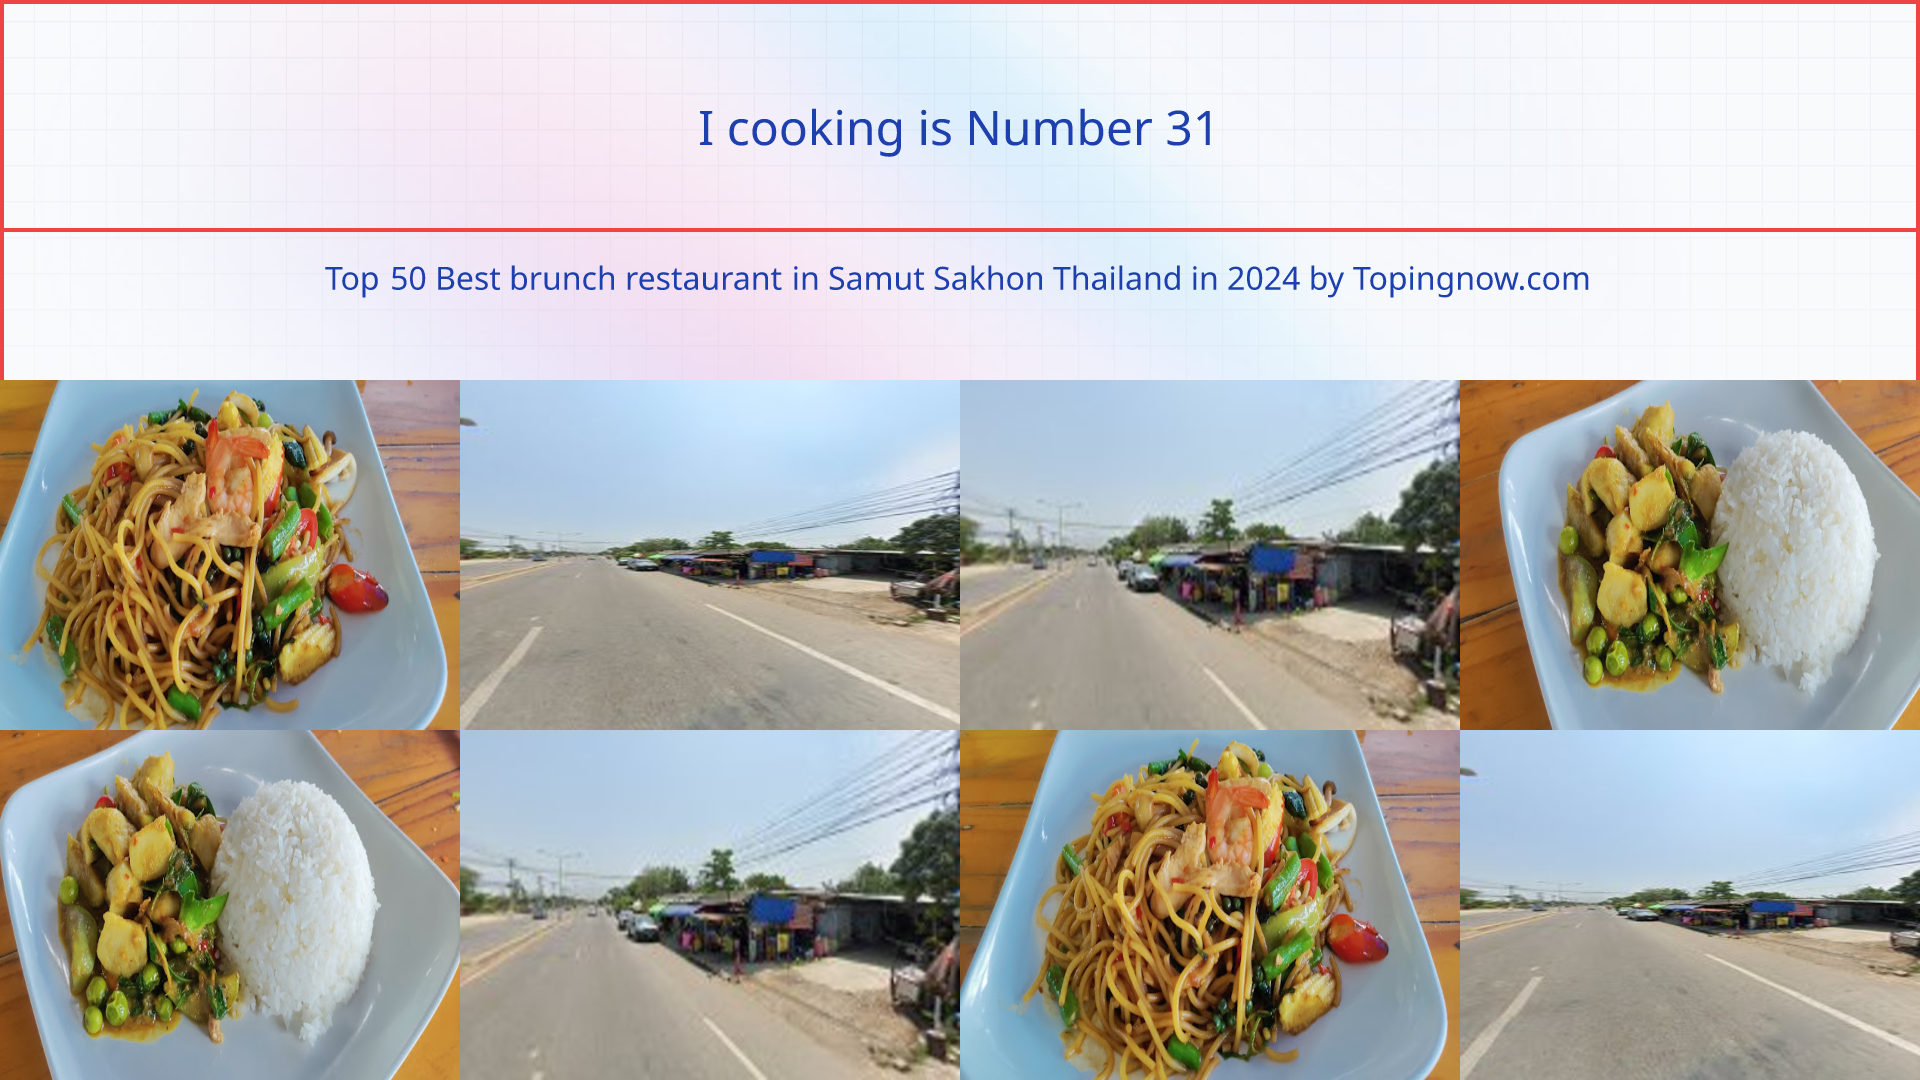 I cooking: Top 50 Best brunch restaurant in Samut Sakhon Thailand in 2024